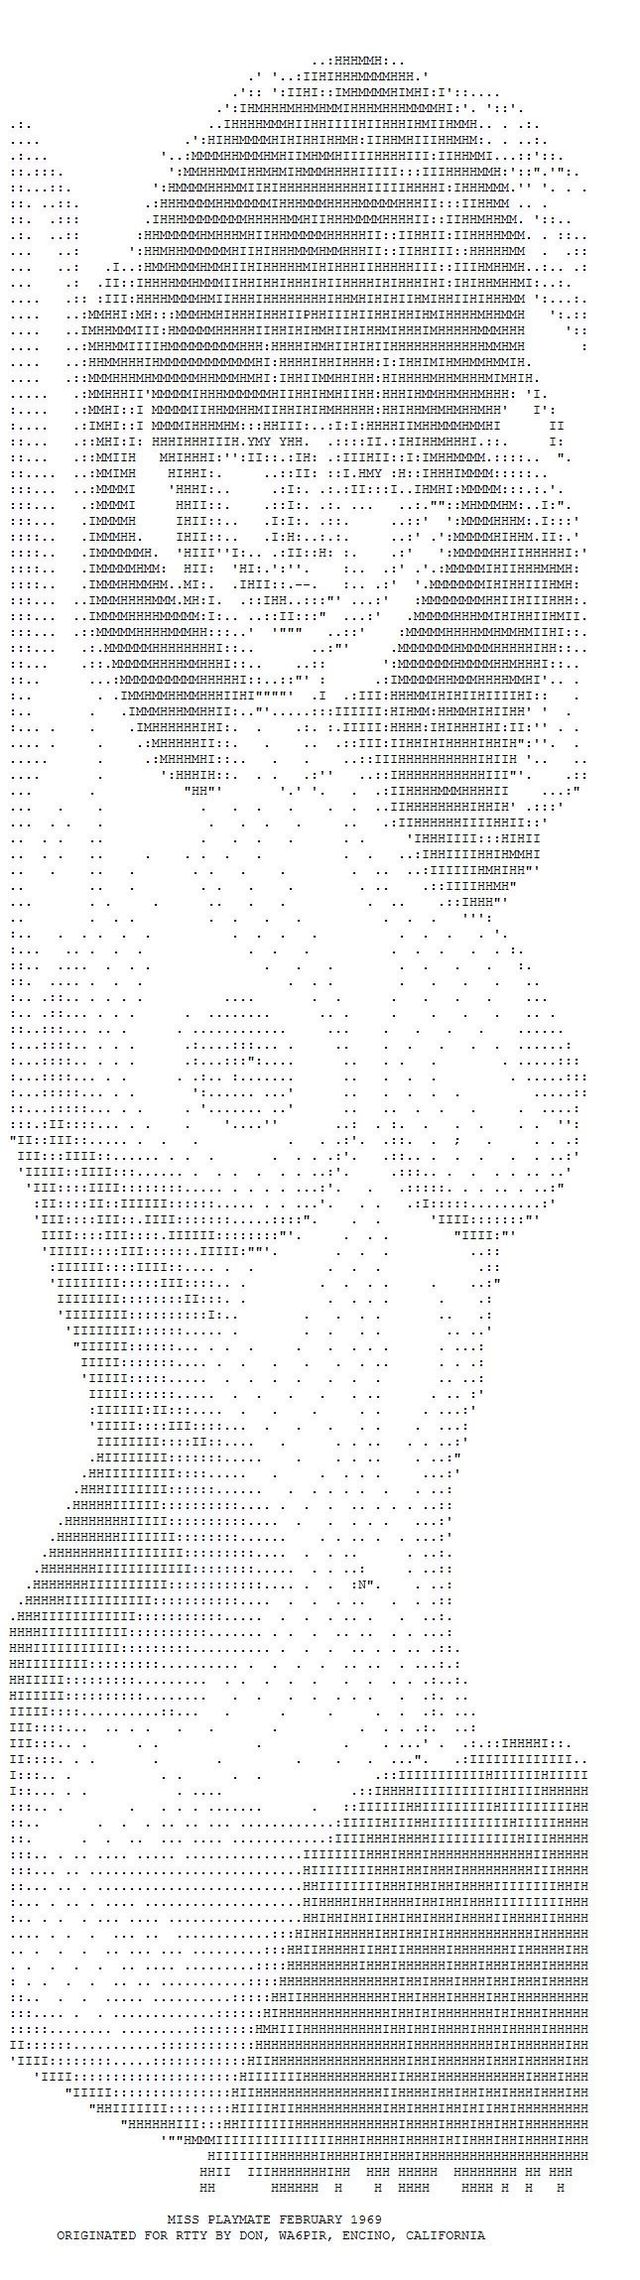 ASCII erotic images - 09